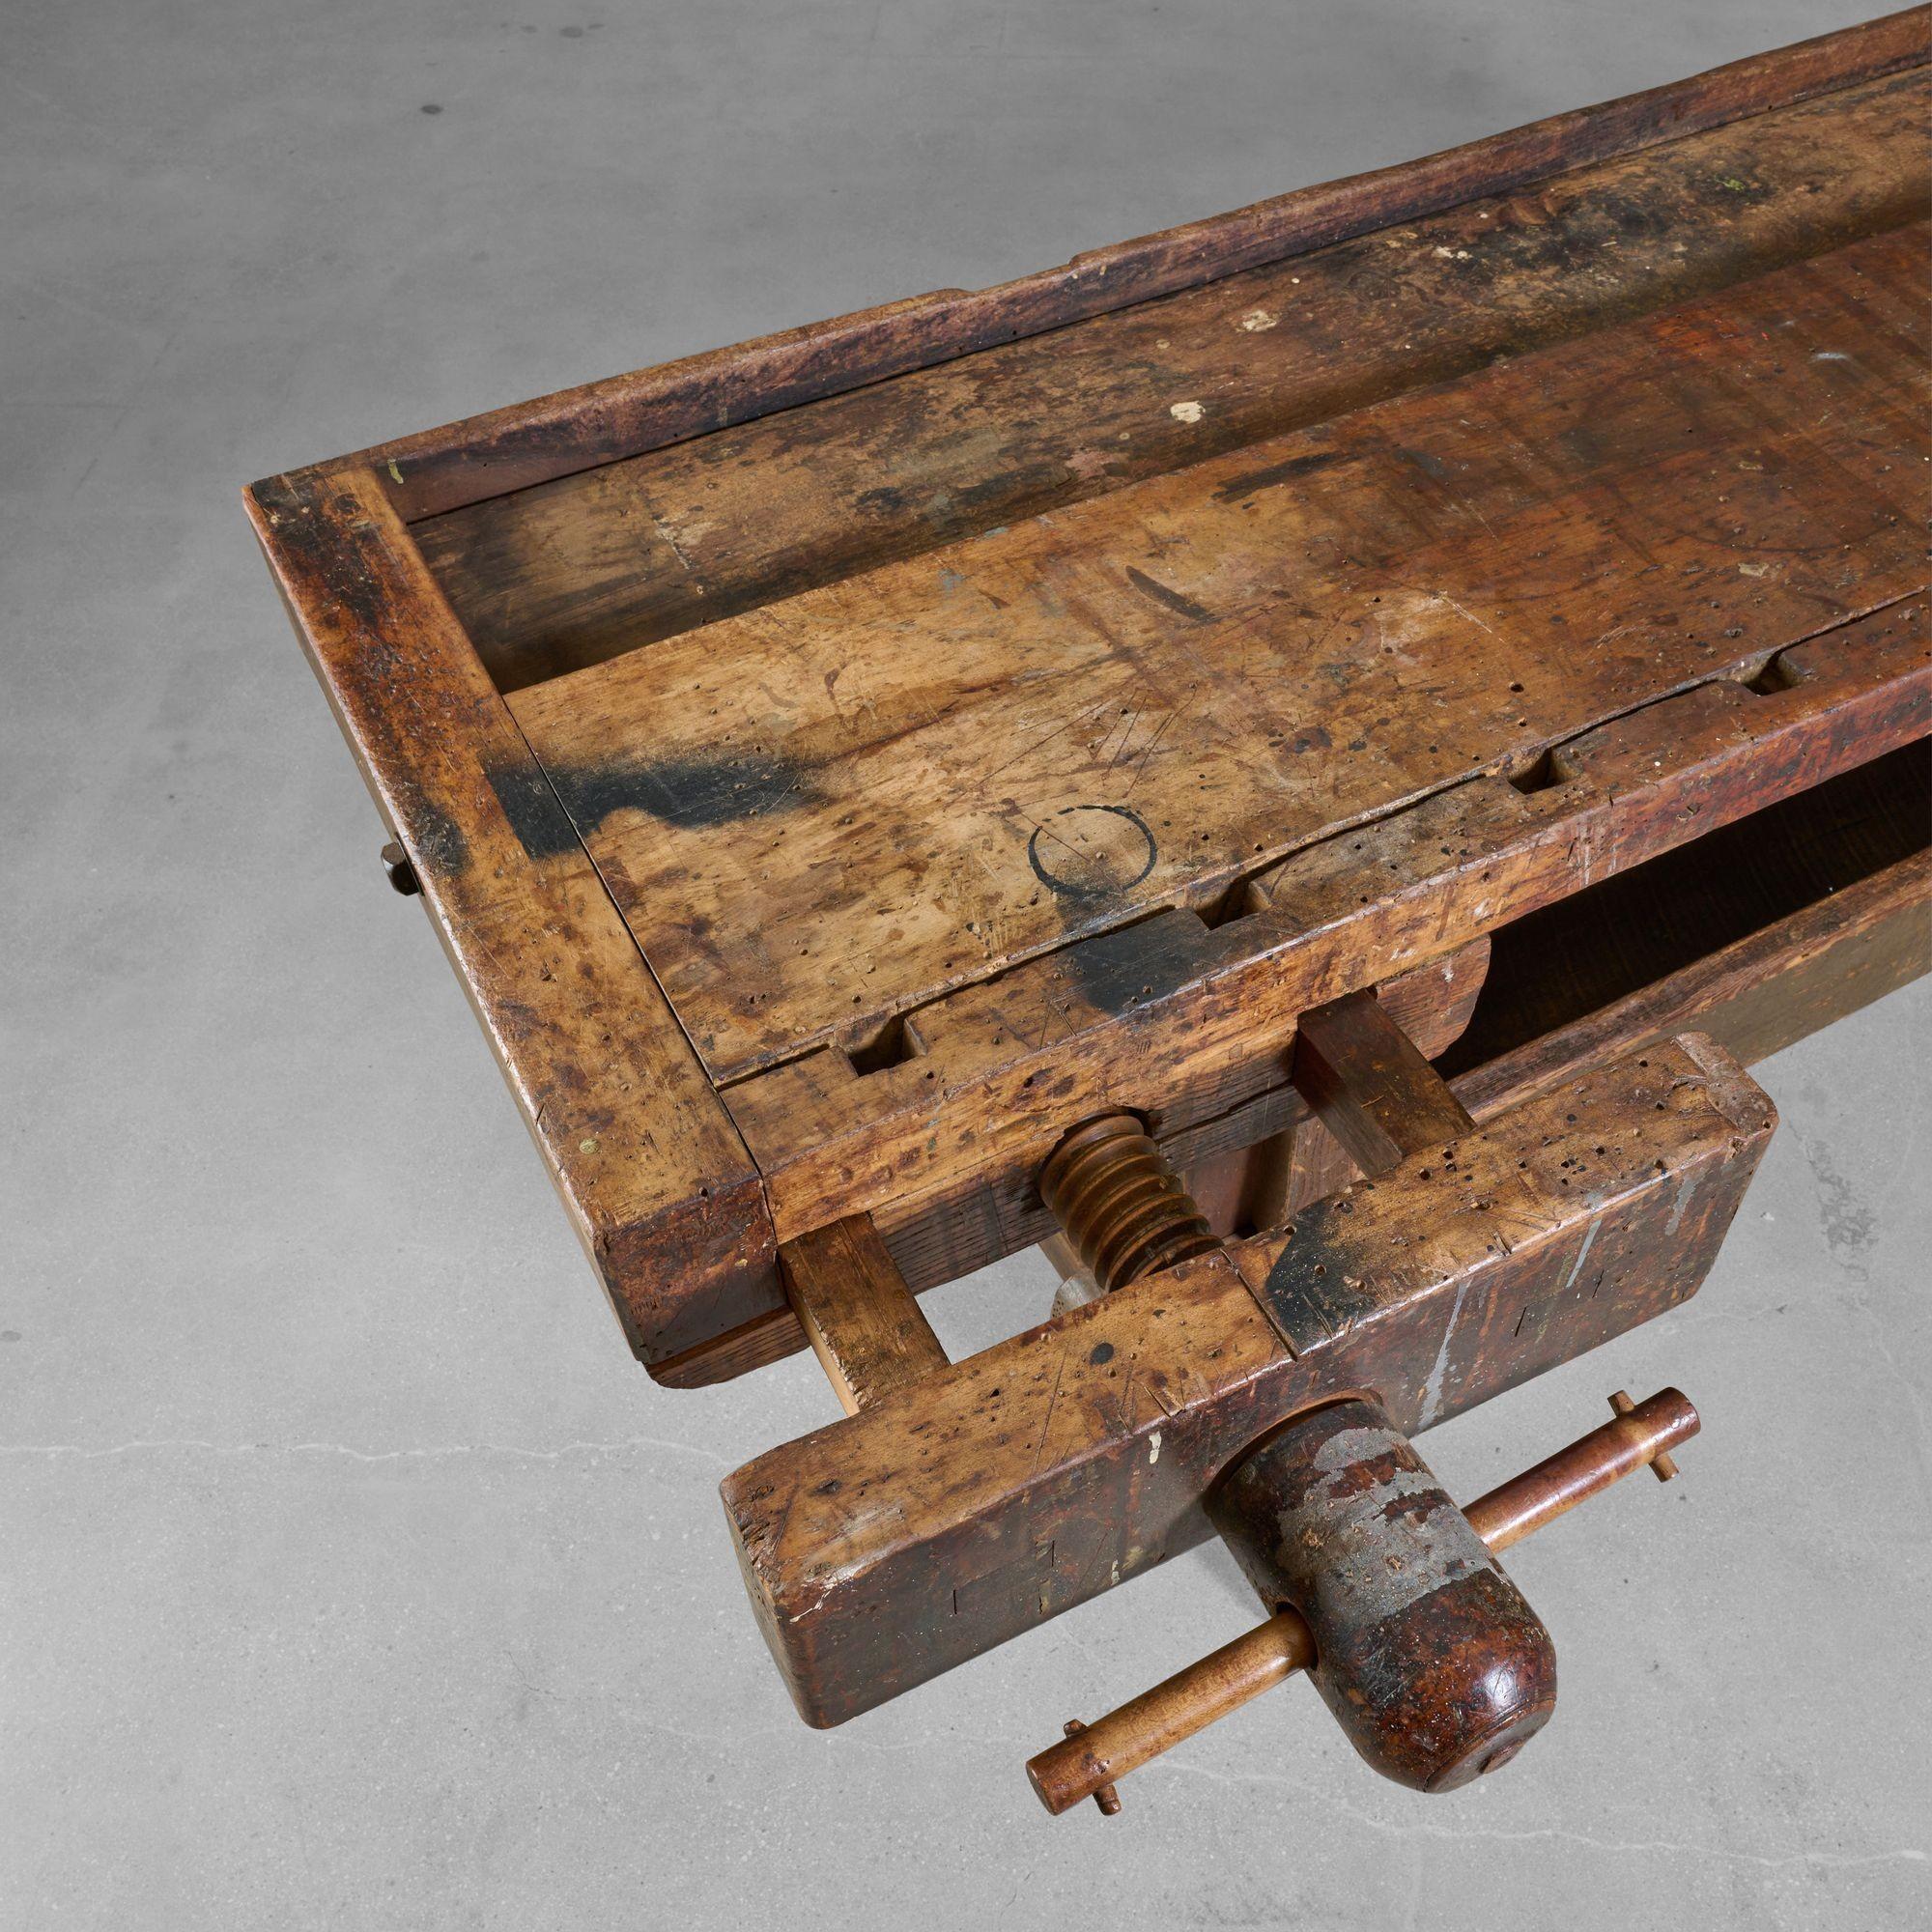 Holzarbeitstisch mit zwei Schraubstöcken und unterer Ablage. Hergestellt aus hartem Ahornholz.